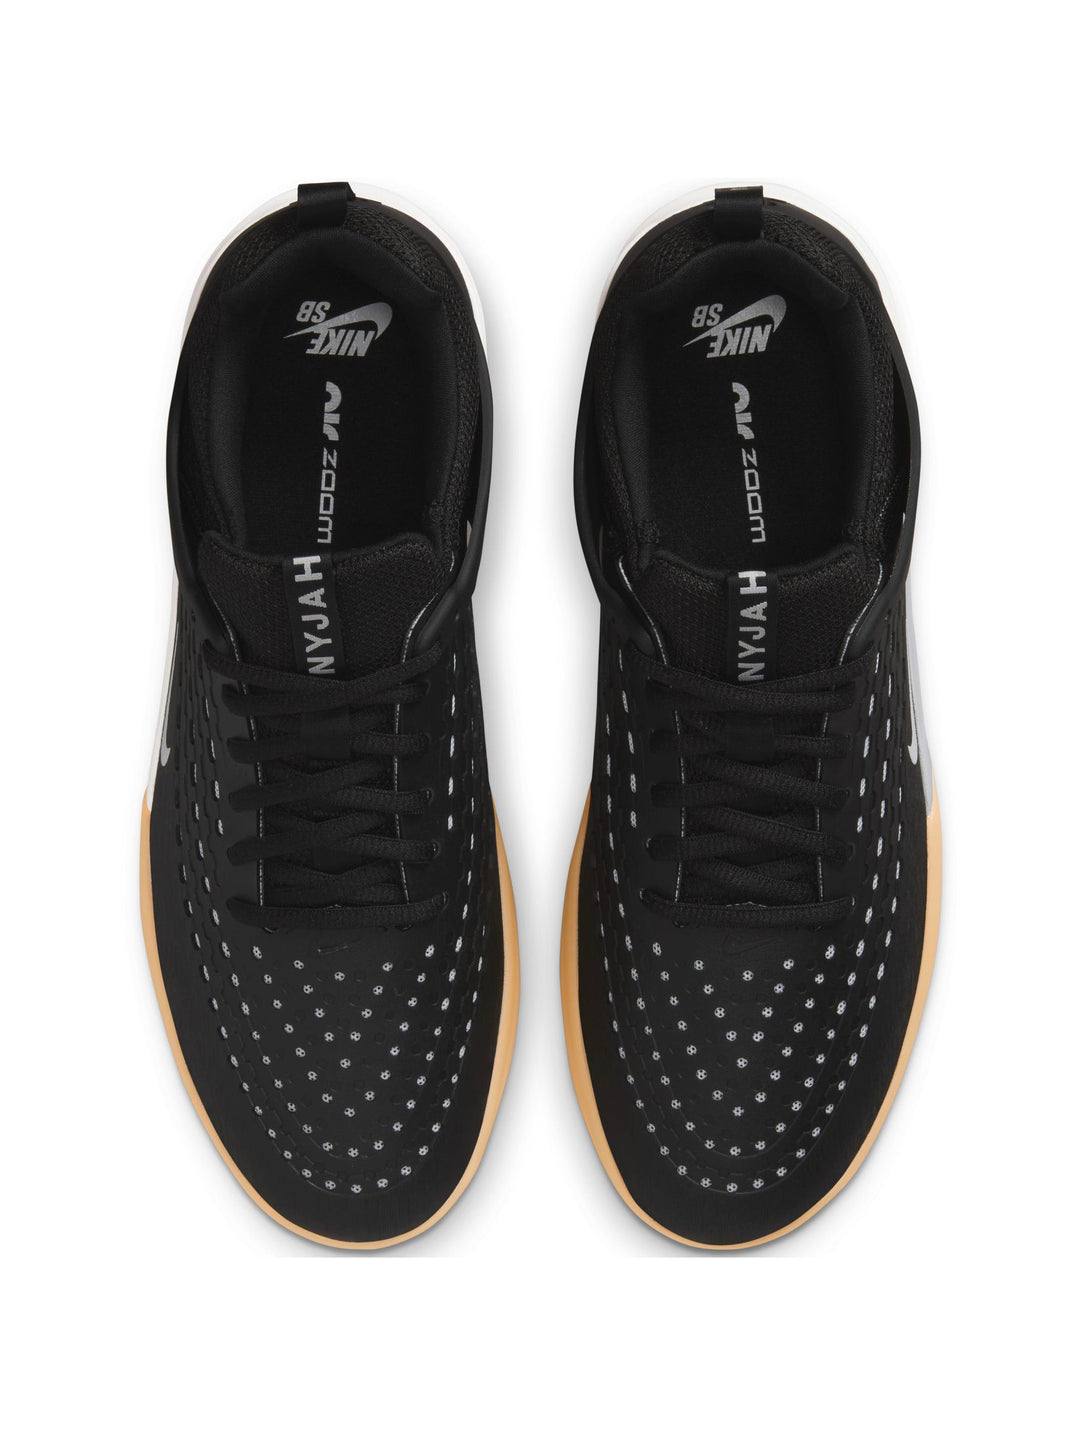 Nike SB Zoom Nyjah 3 - Black / White / Gum